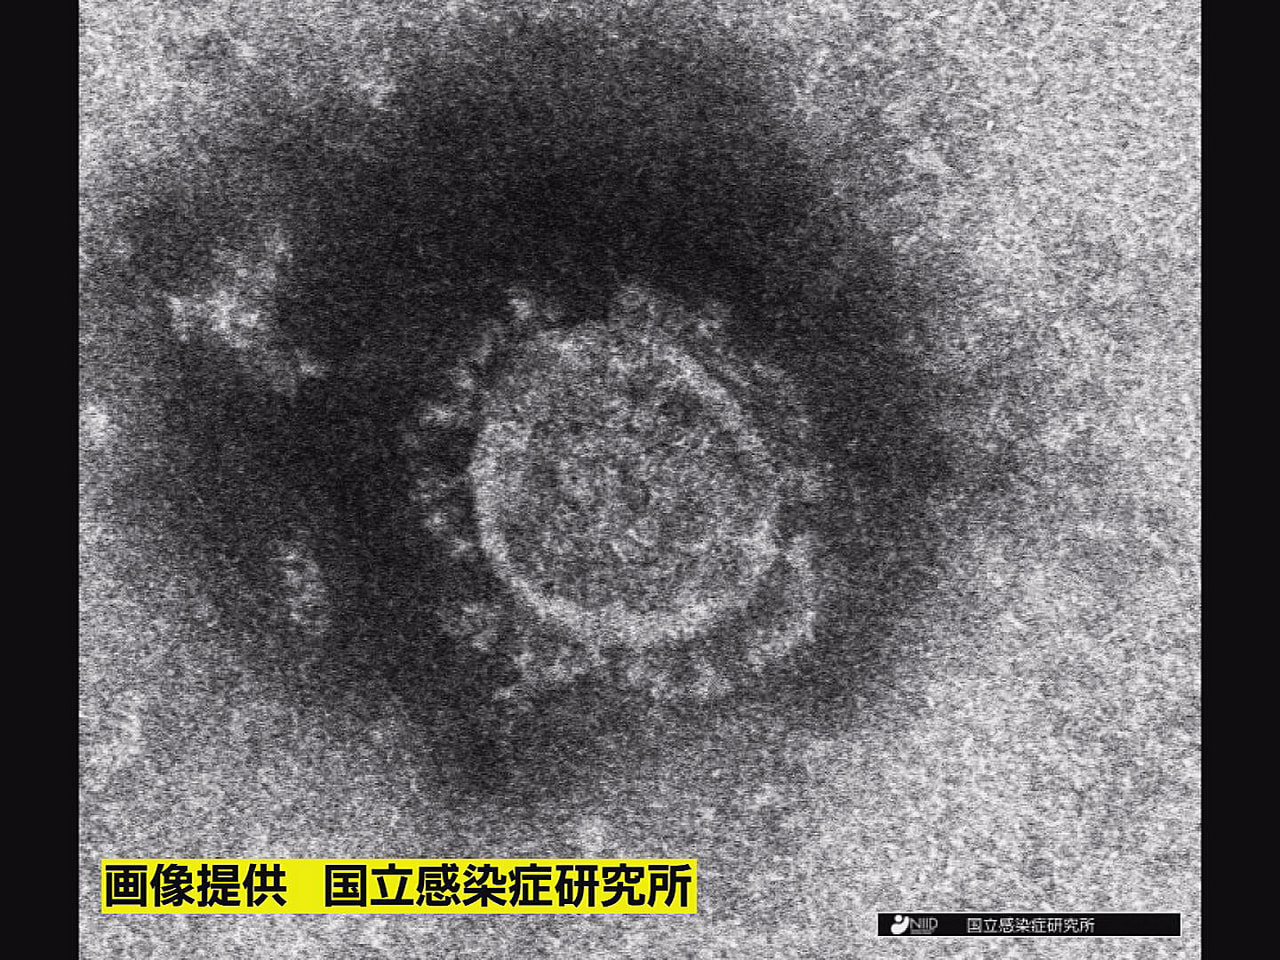 岐阜県は１９日、新型コロナウイルスの新規感染者が４４３人確認されたと発表しました...